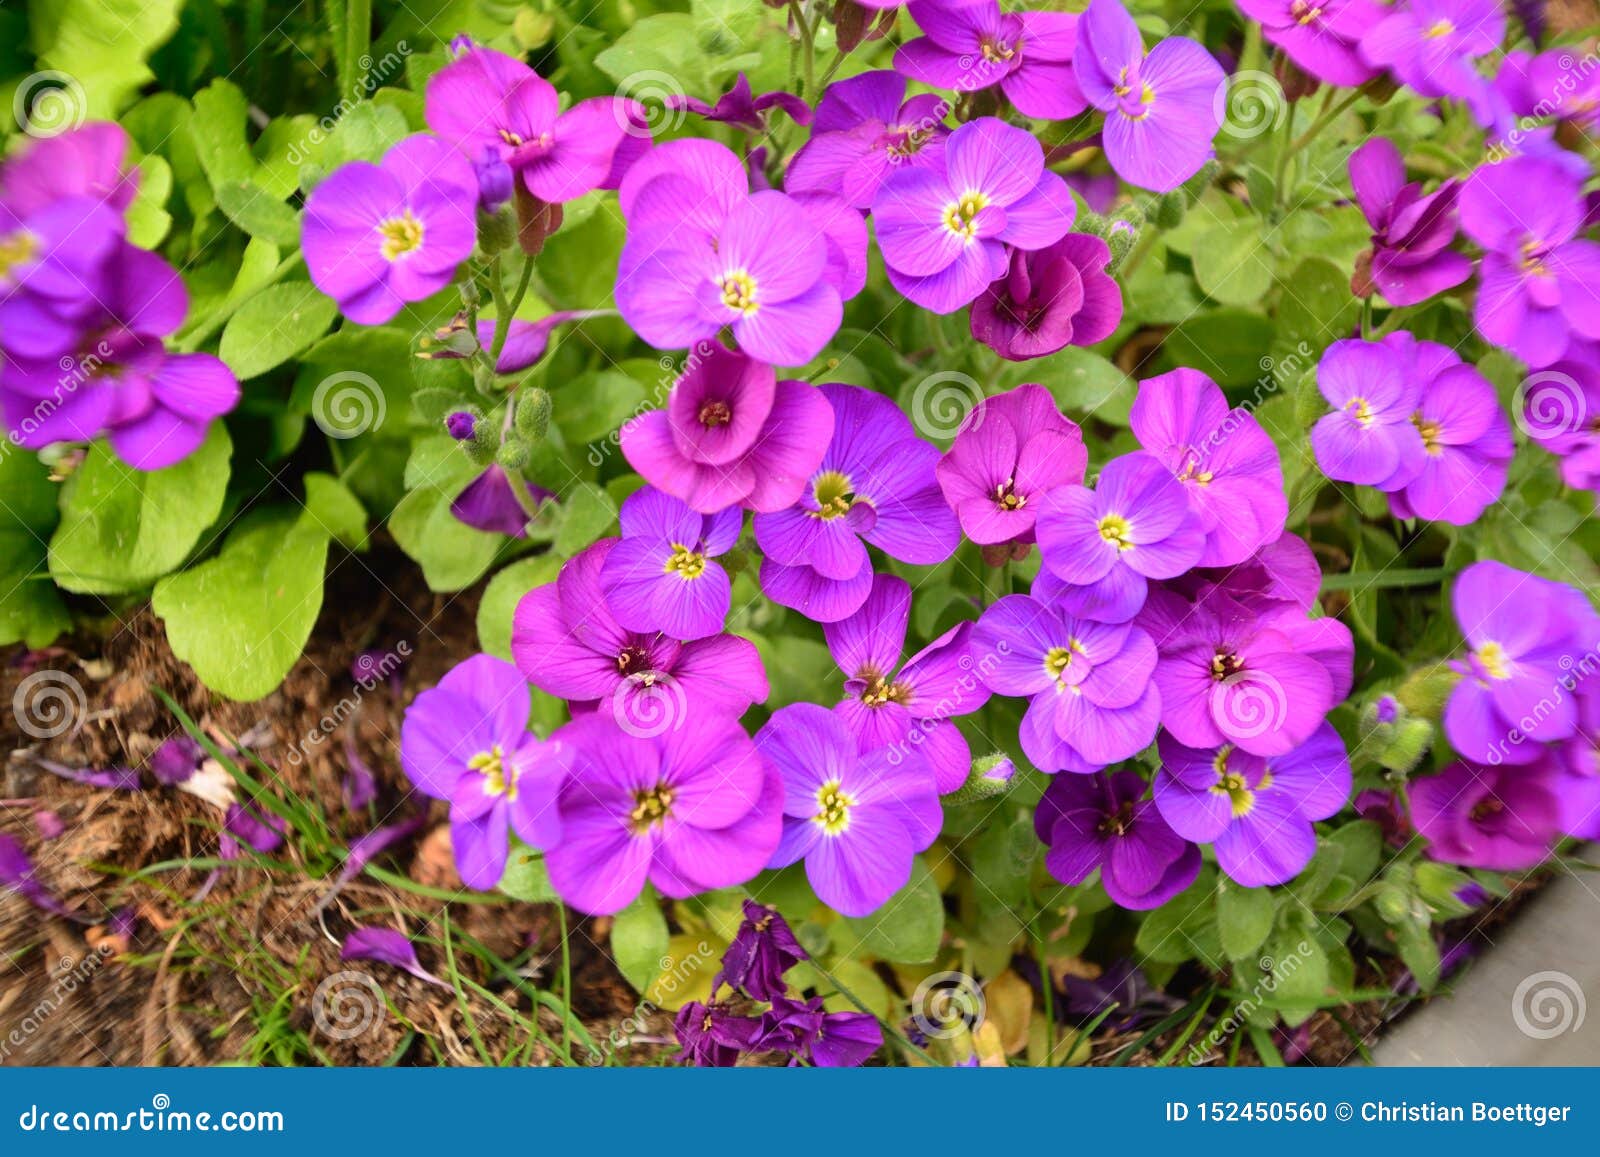 La Belle Fleur Violette Dans Le Jardin a Brillé Au Soleil Photo stock -  Image du ouvert, contrastes: 152450560